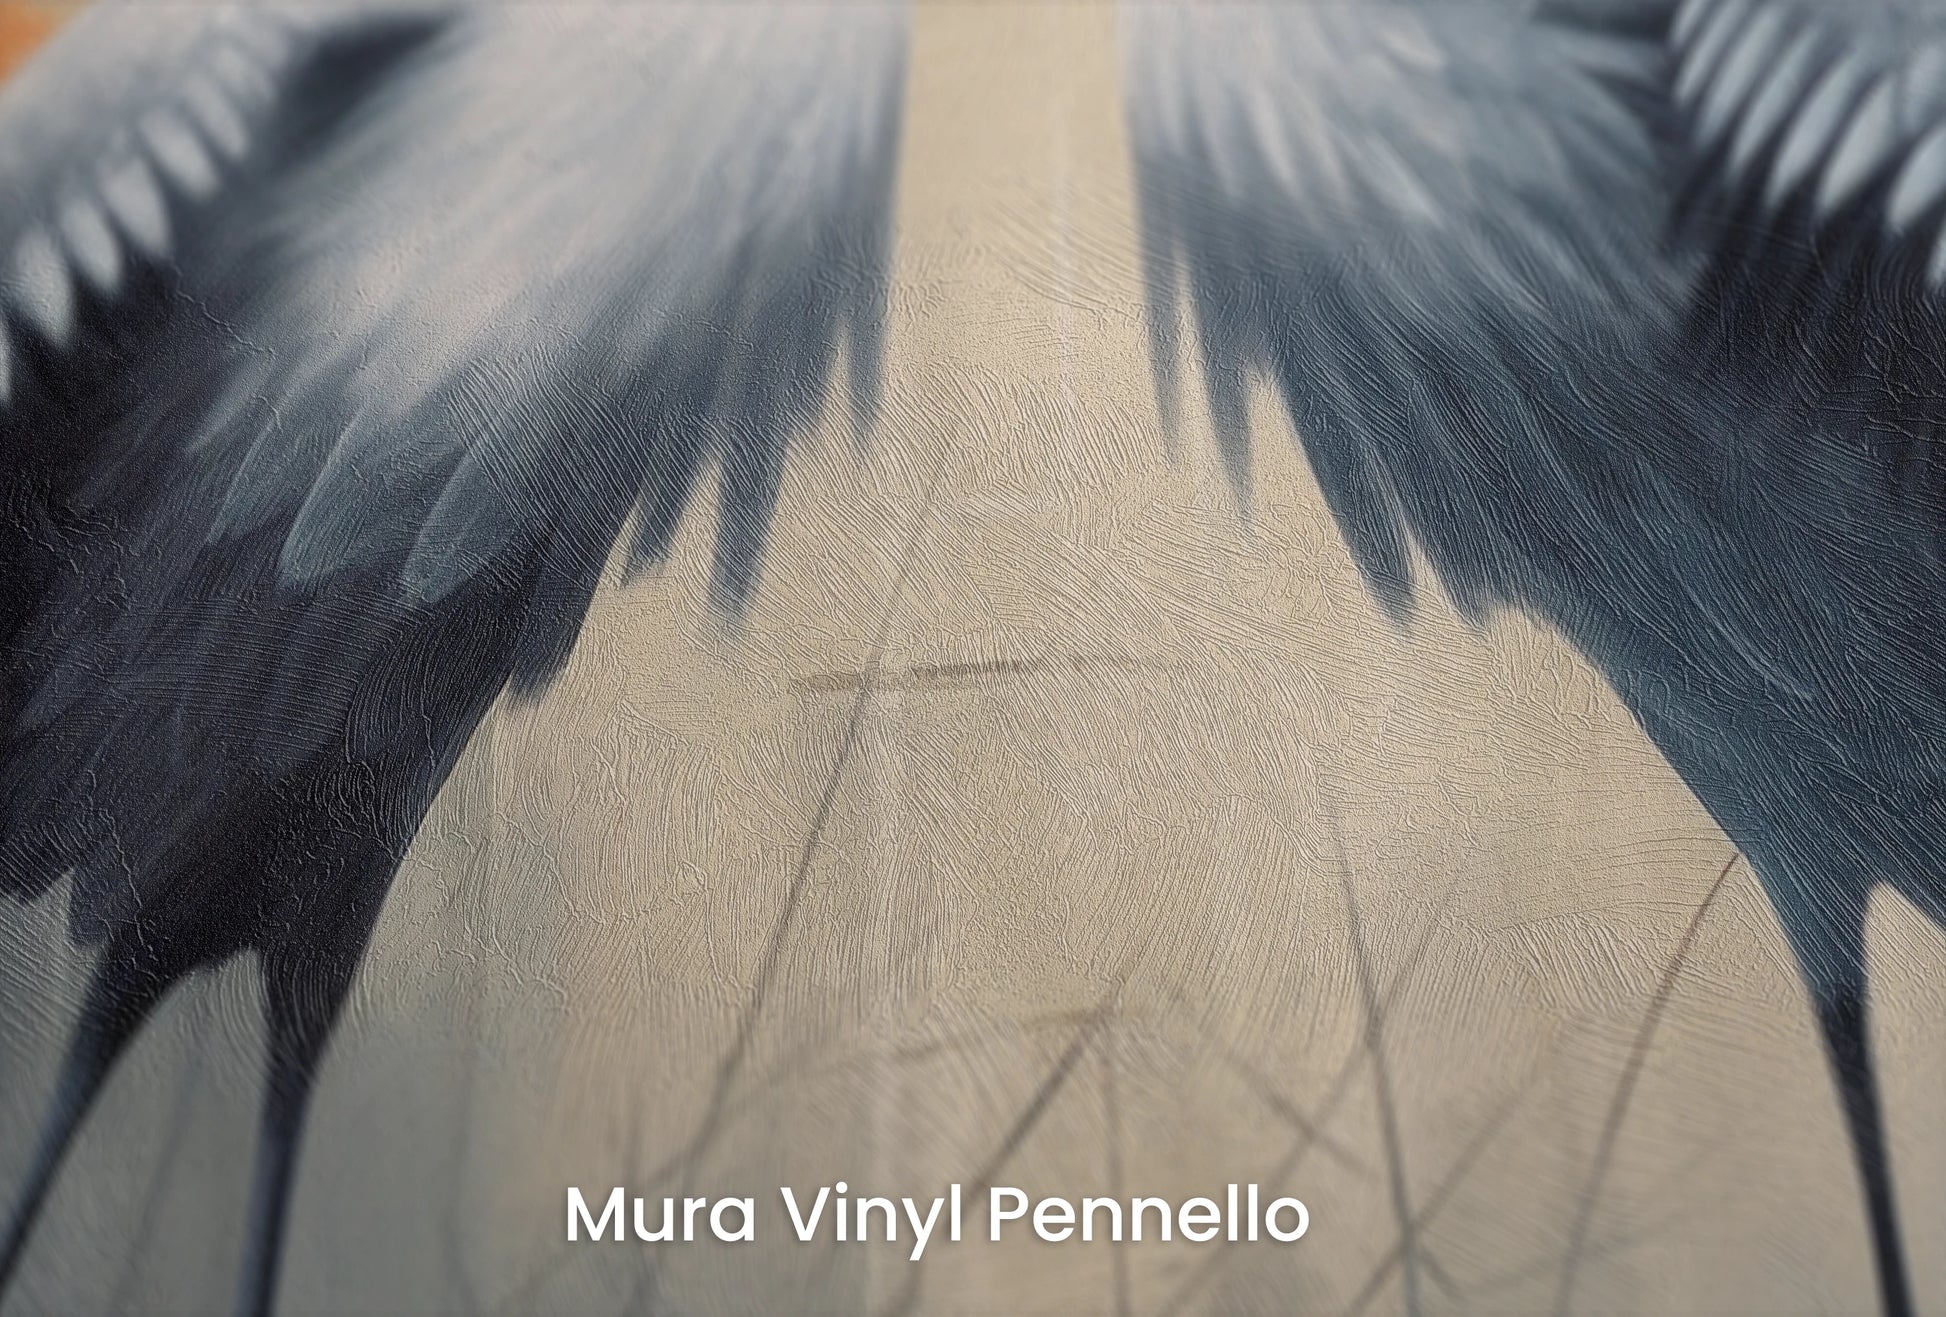 Zbliżenie na artystyczną fototapetę o nazwie Solemn Vow na podłożu Mura Vinyl Pennello - faktura pociągnięć pędzla malarskiego.